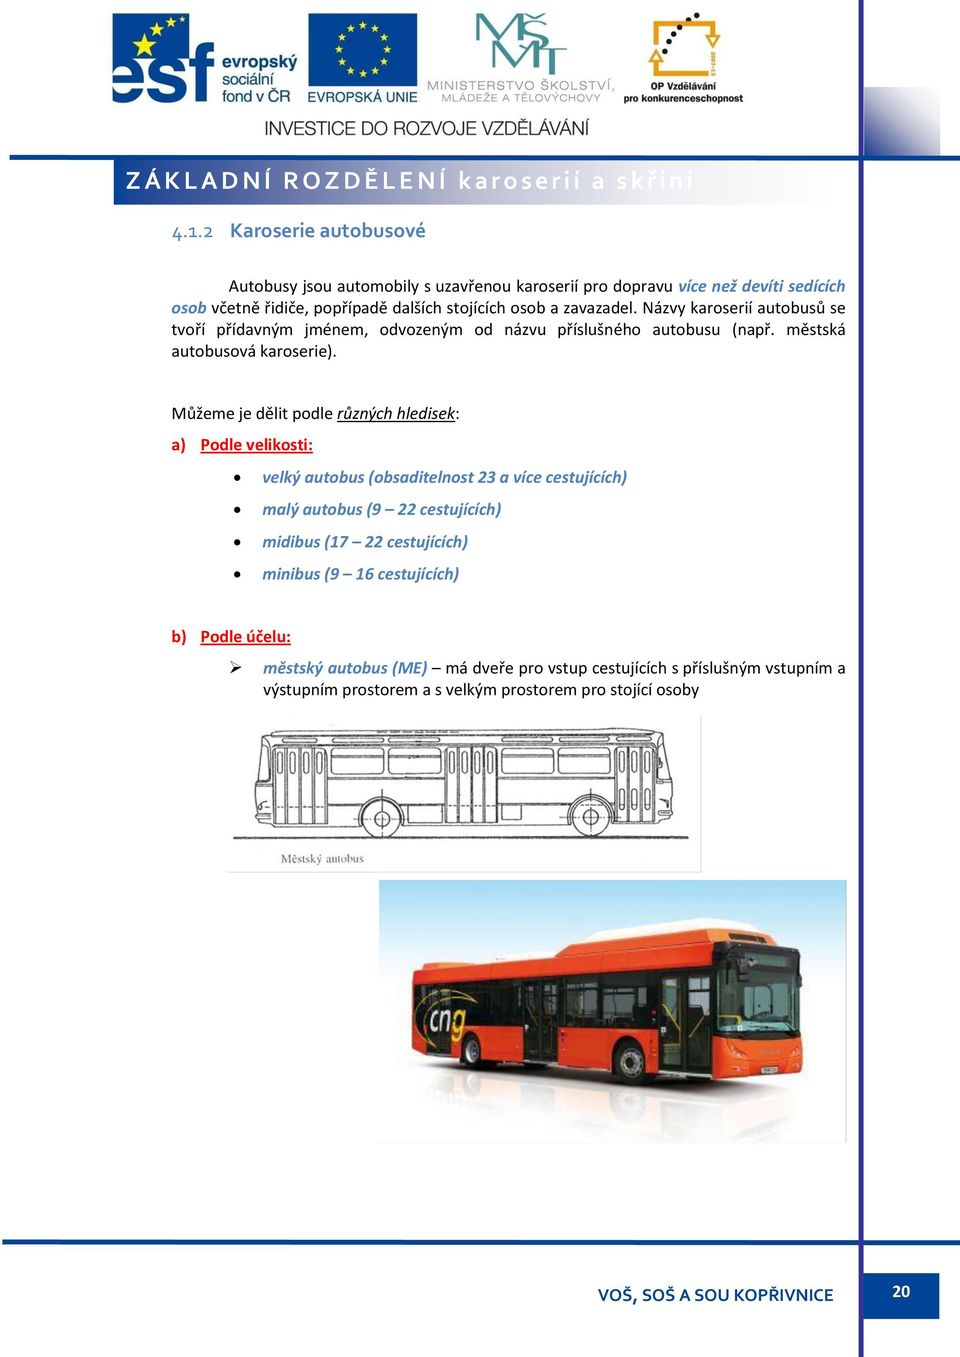 Názvy karoserií autobusů se tvoří přídavným jménem, odvozeným od názvu příslušného autobusu (např. městská autobusová karoserie).